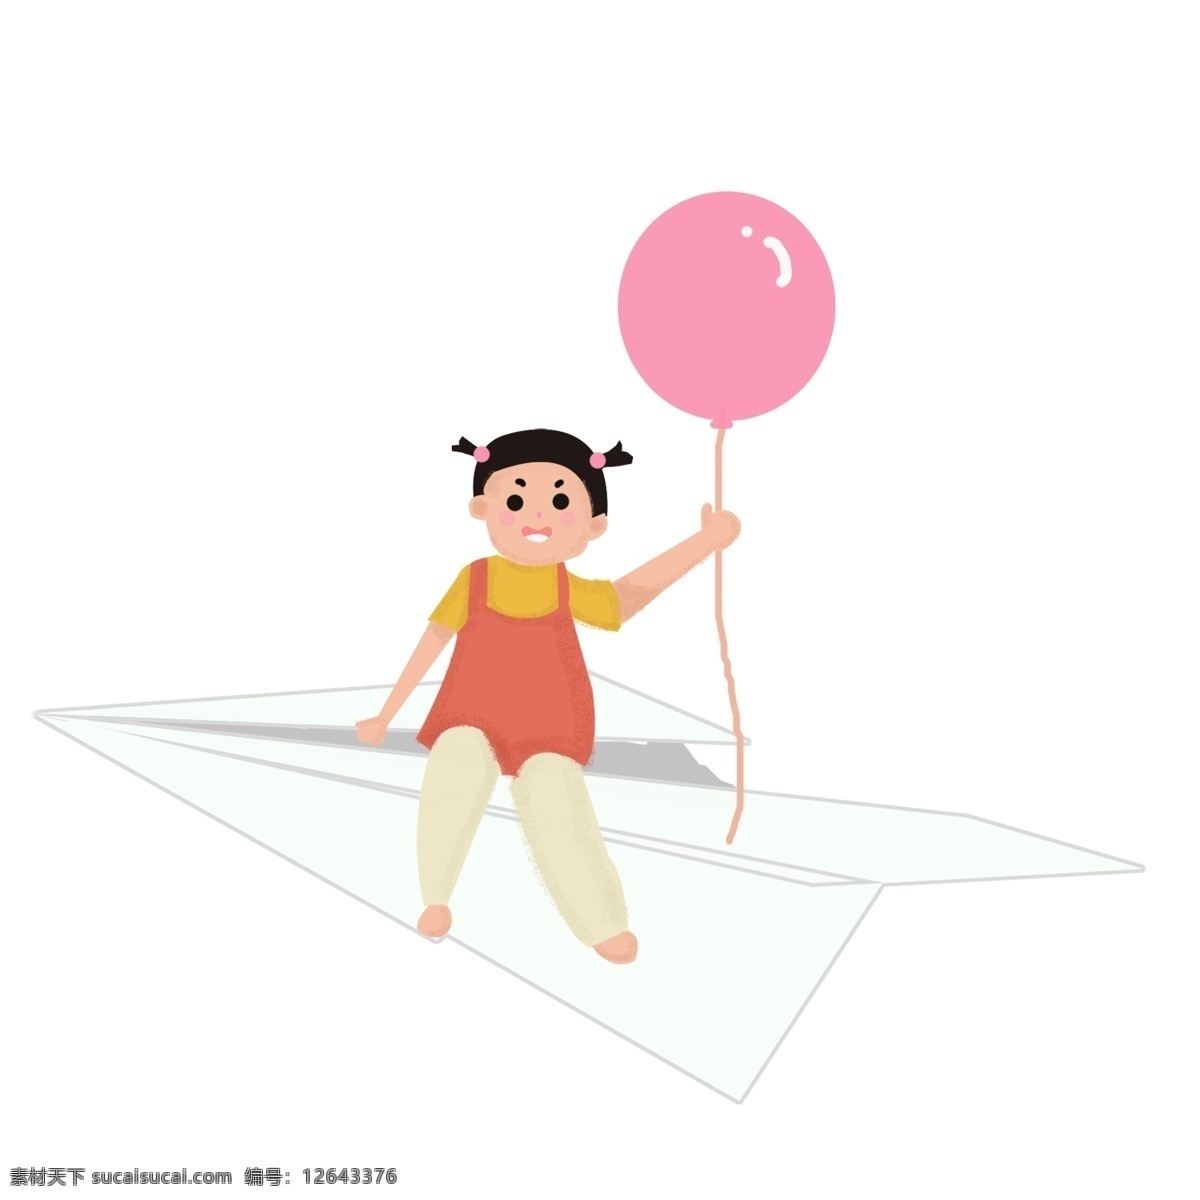 创意 61 儿童节 元素 免扣61 欢乐过六一 孩子节日 手绘儿童节 时尚儿童节 唯美节日 小孩 气球 纸飞机 原创